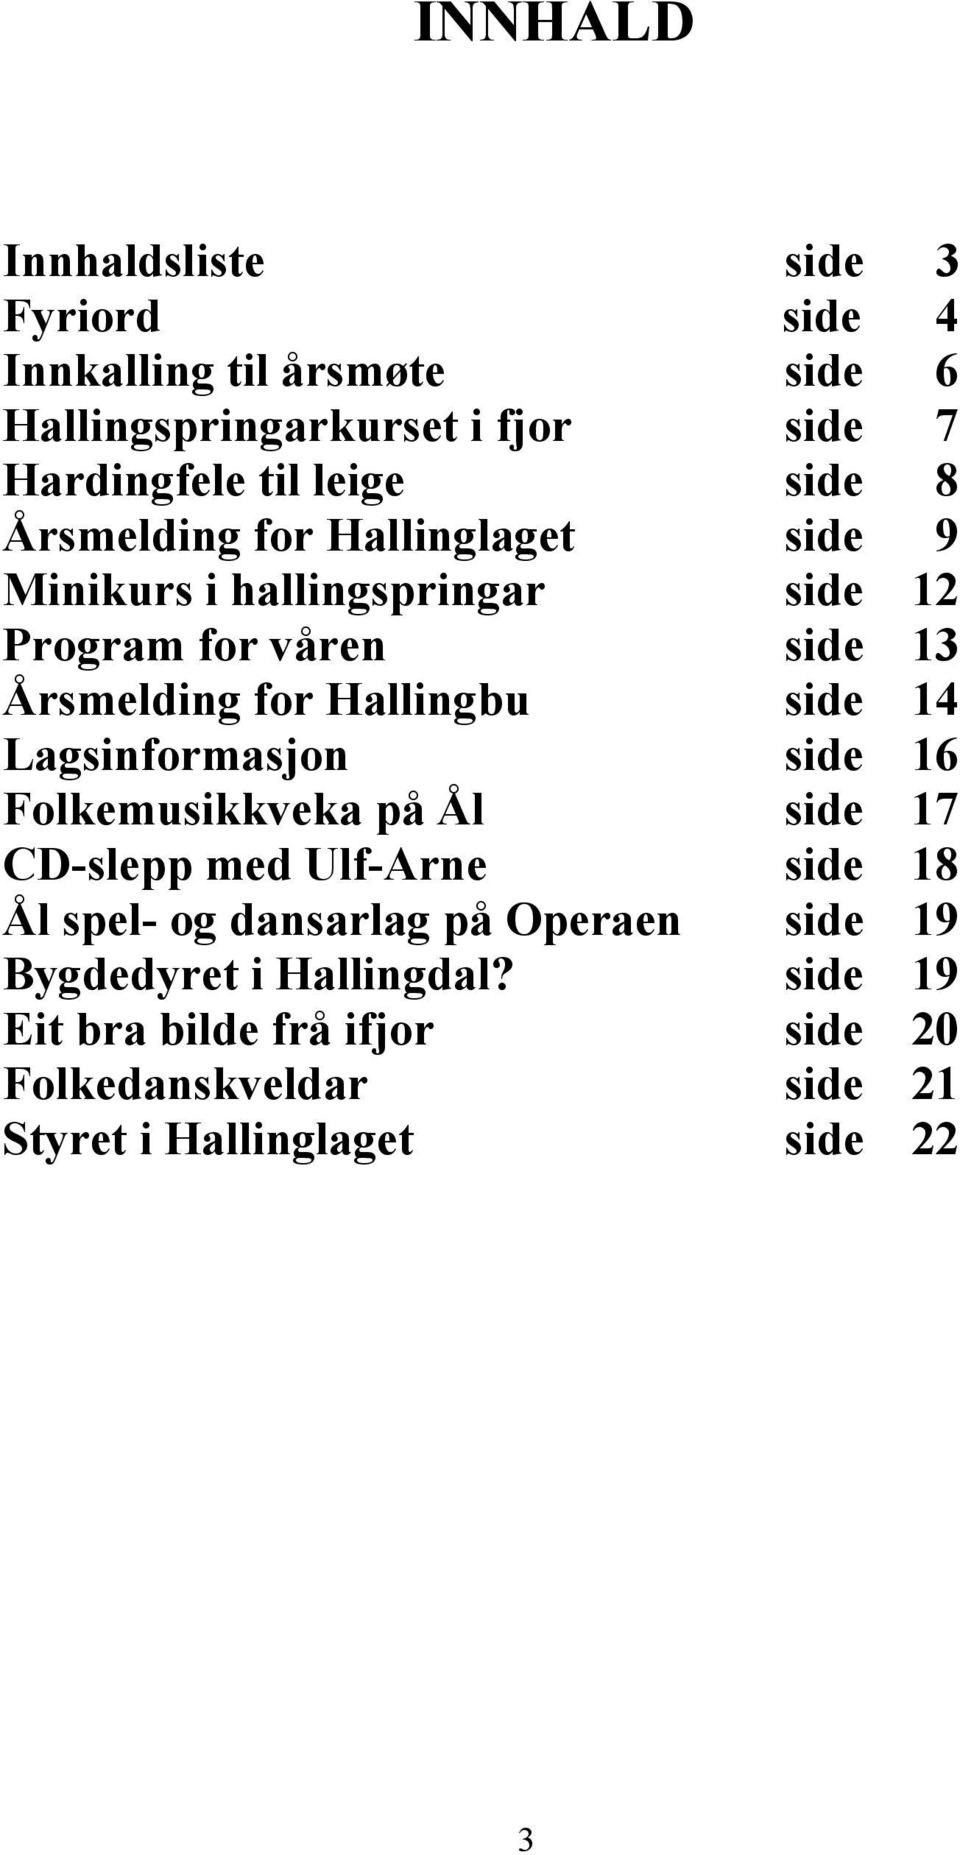 Hallingbu side 14 Lagsinformasjon side 16 Folkemusikkveka på Ål side 17 CD-slepp med Ulf-Arne side 18 Ål spel- og dansarlag på